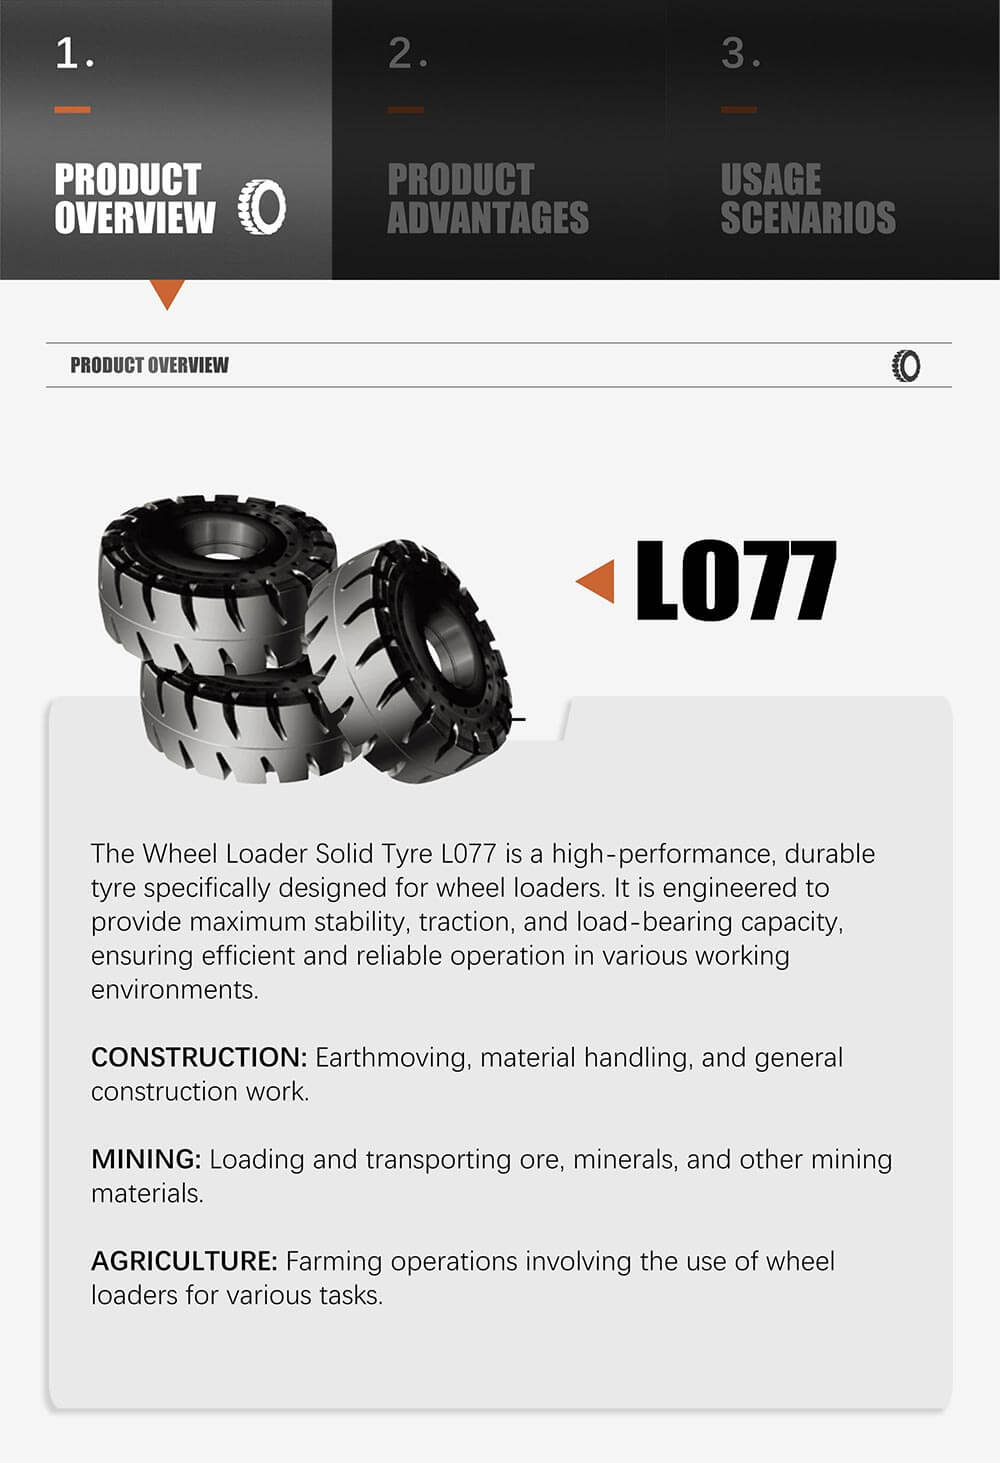 Wheel loader solid Tyre L077